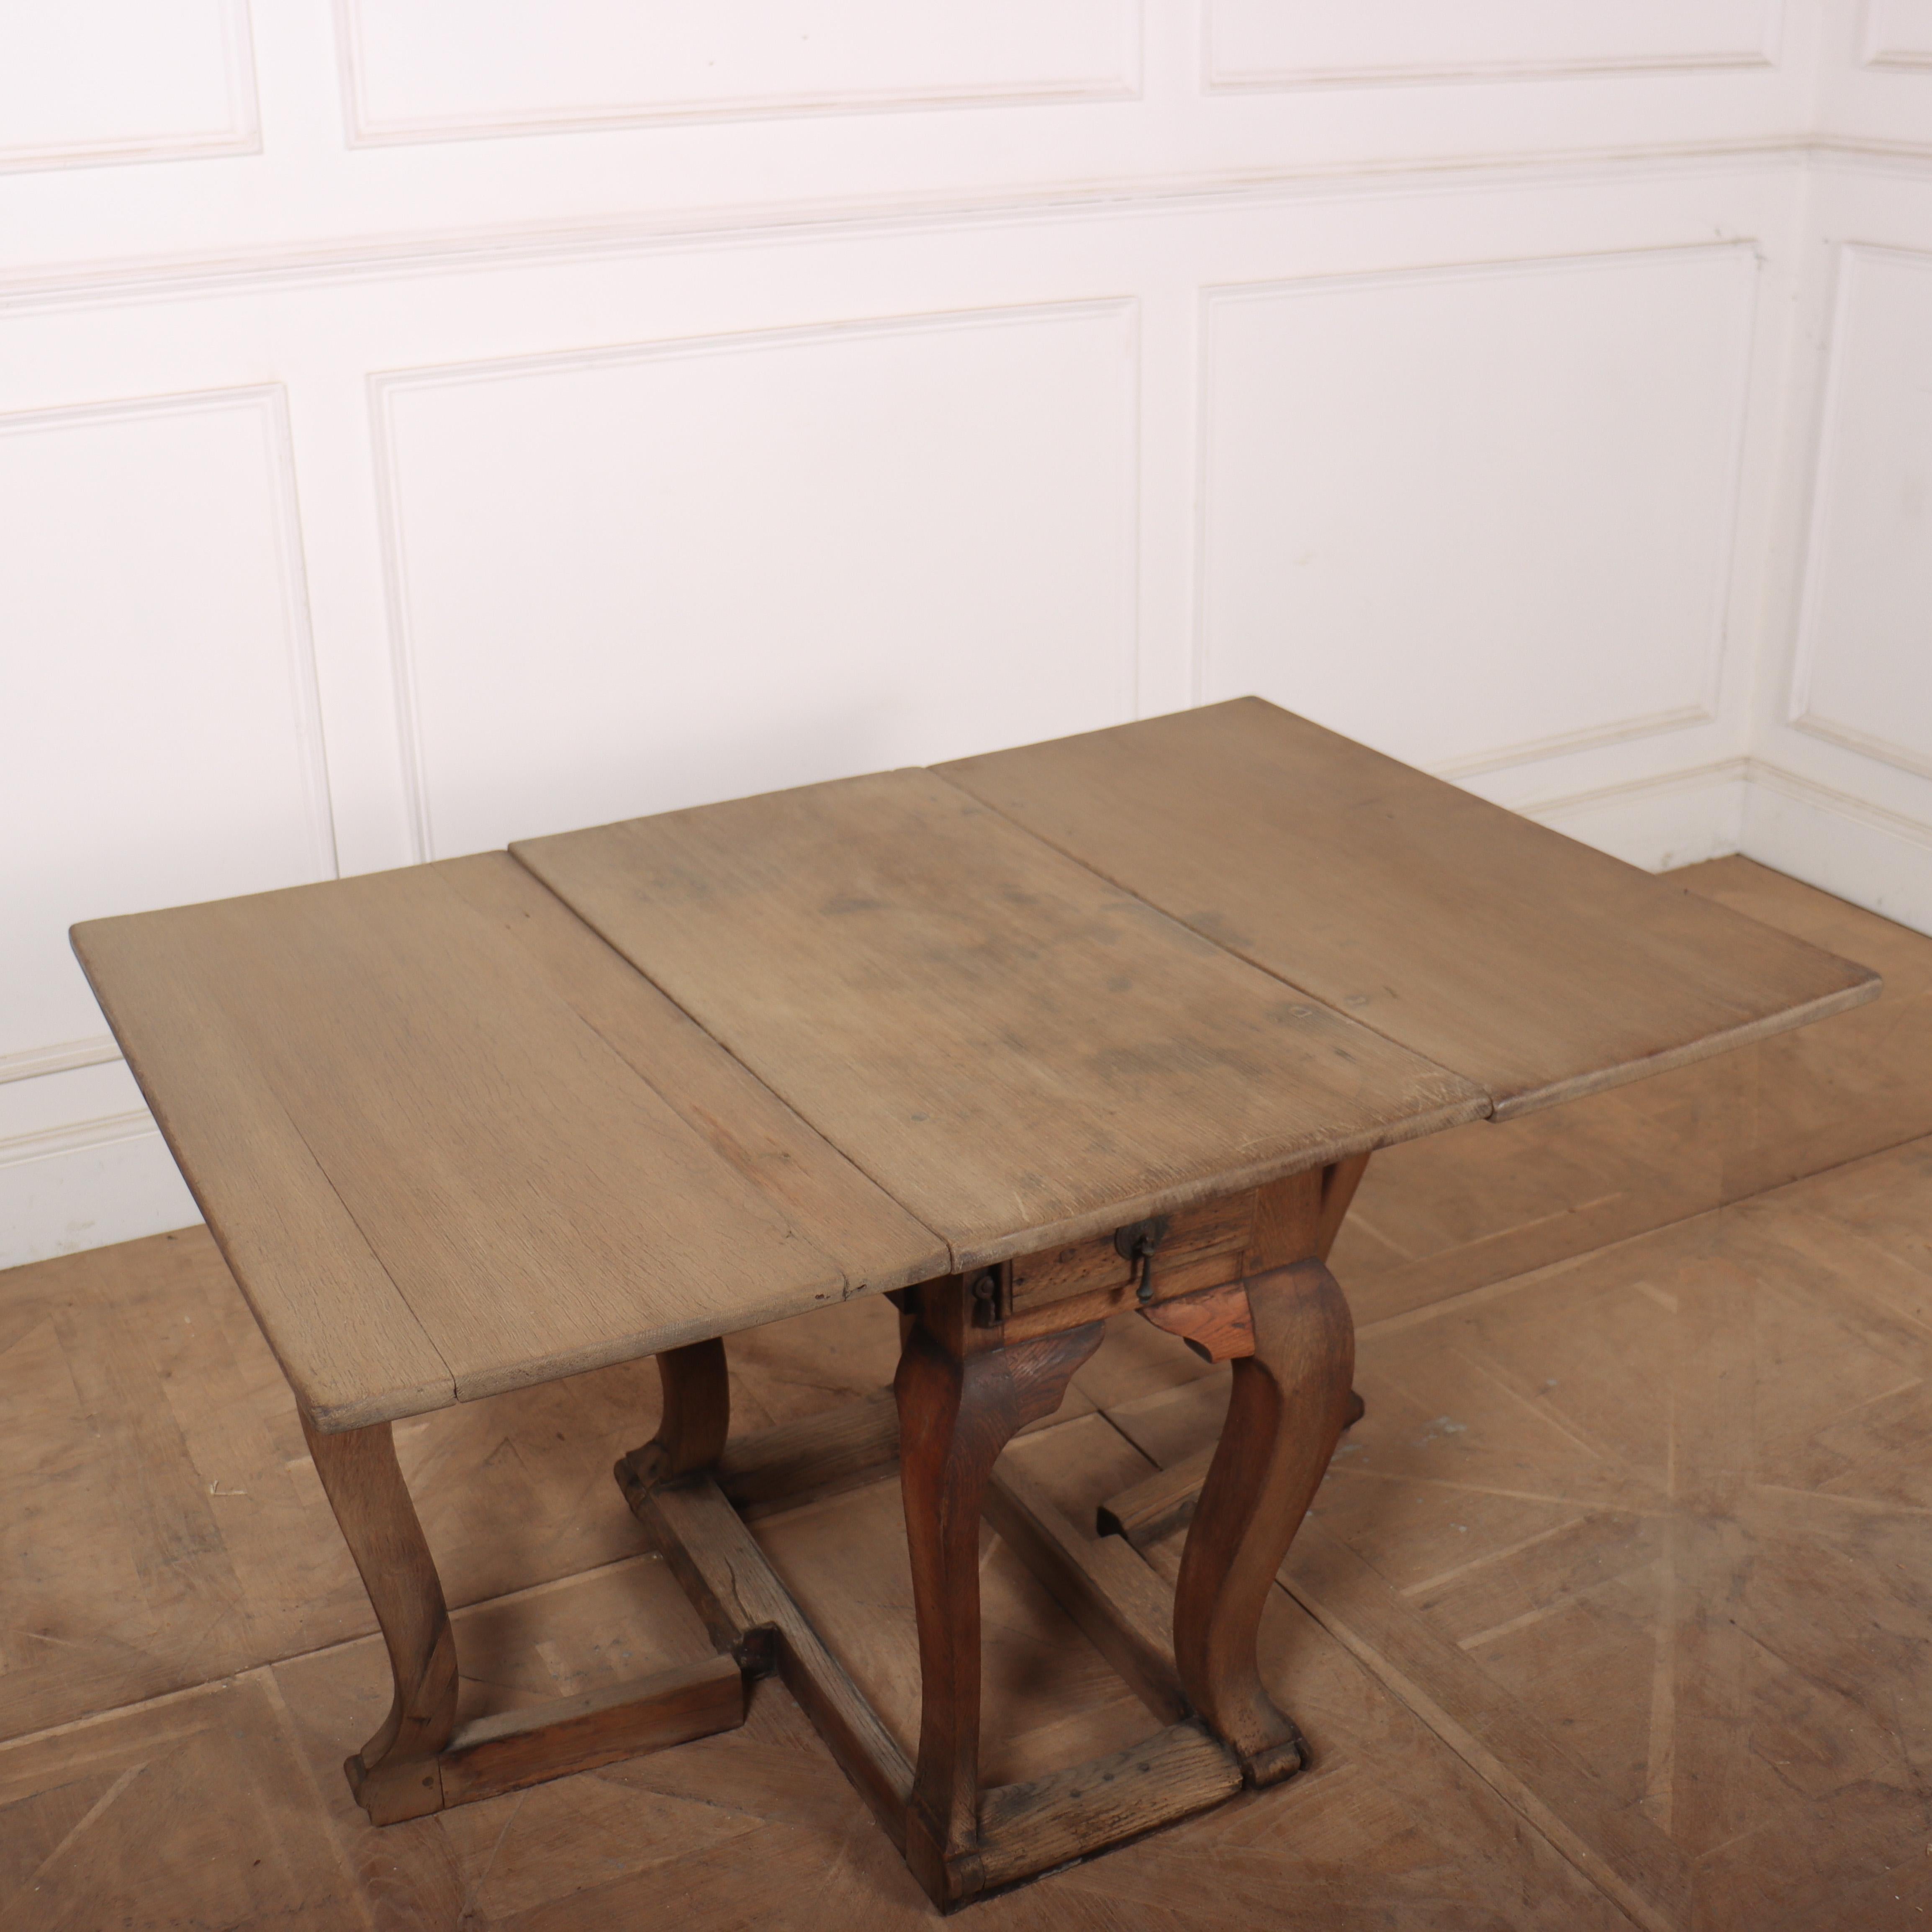 Ungewöhnlicher holländischer Eichenholztisch aus dem 18. Jahrhundert mit zwei Schubladen. Schöner trockener Abgang. 1760.

Die Breite mit aufgestellten Blättern beträgt 50